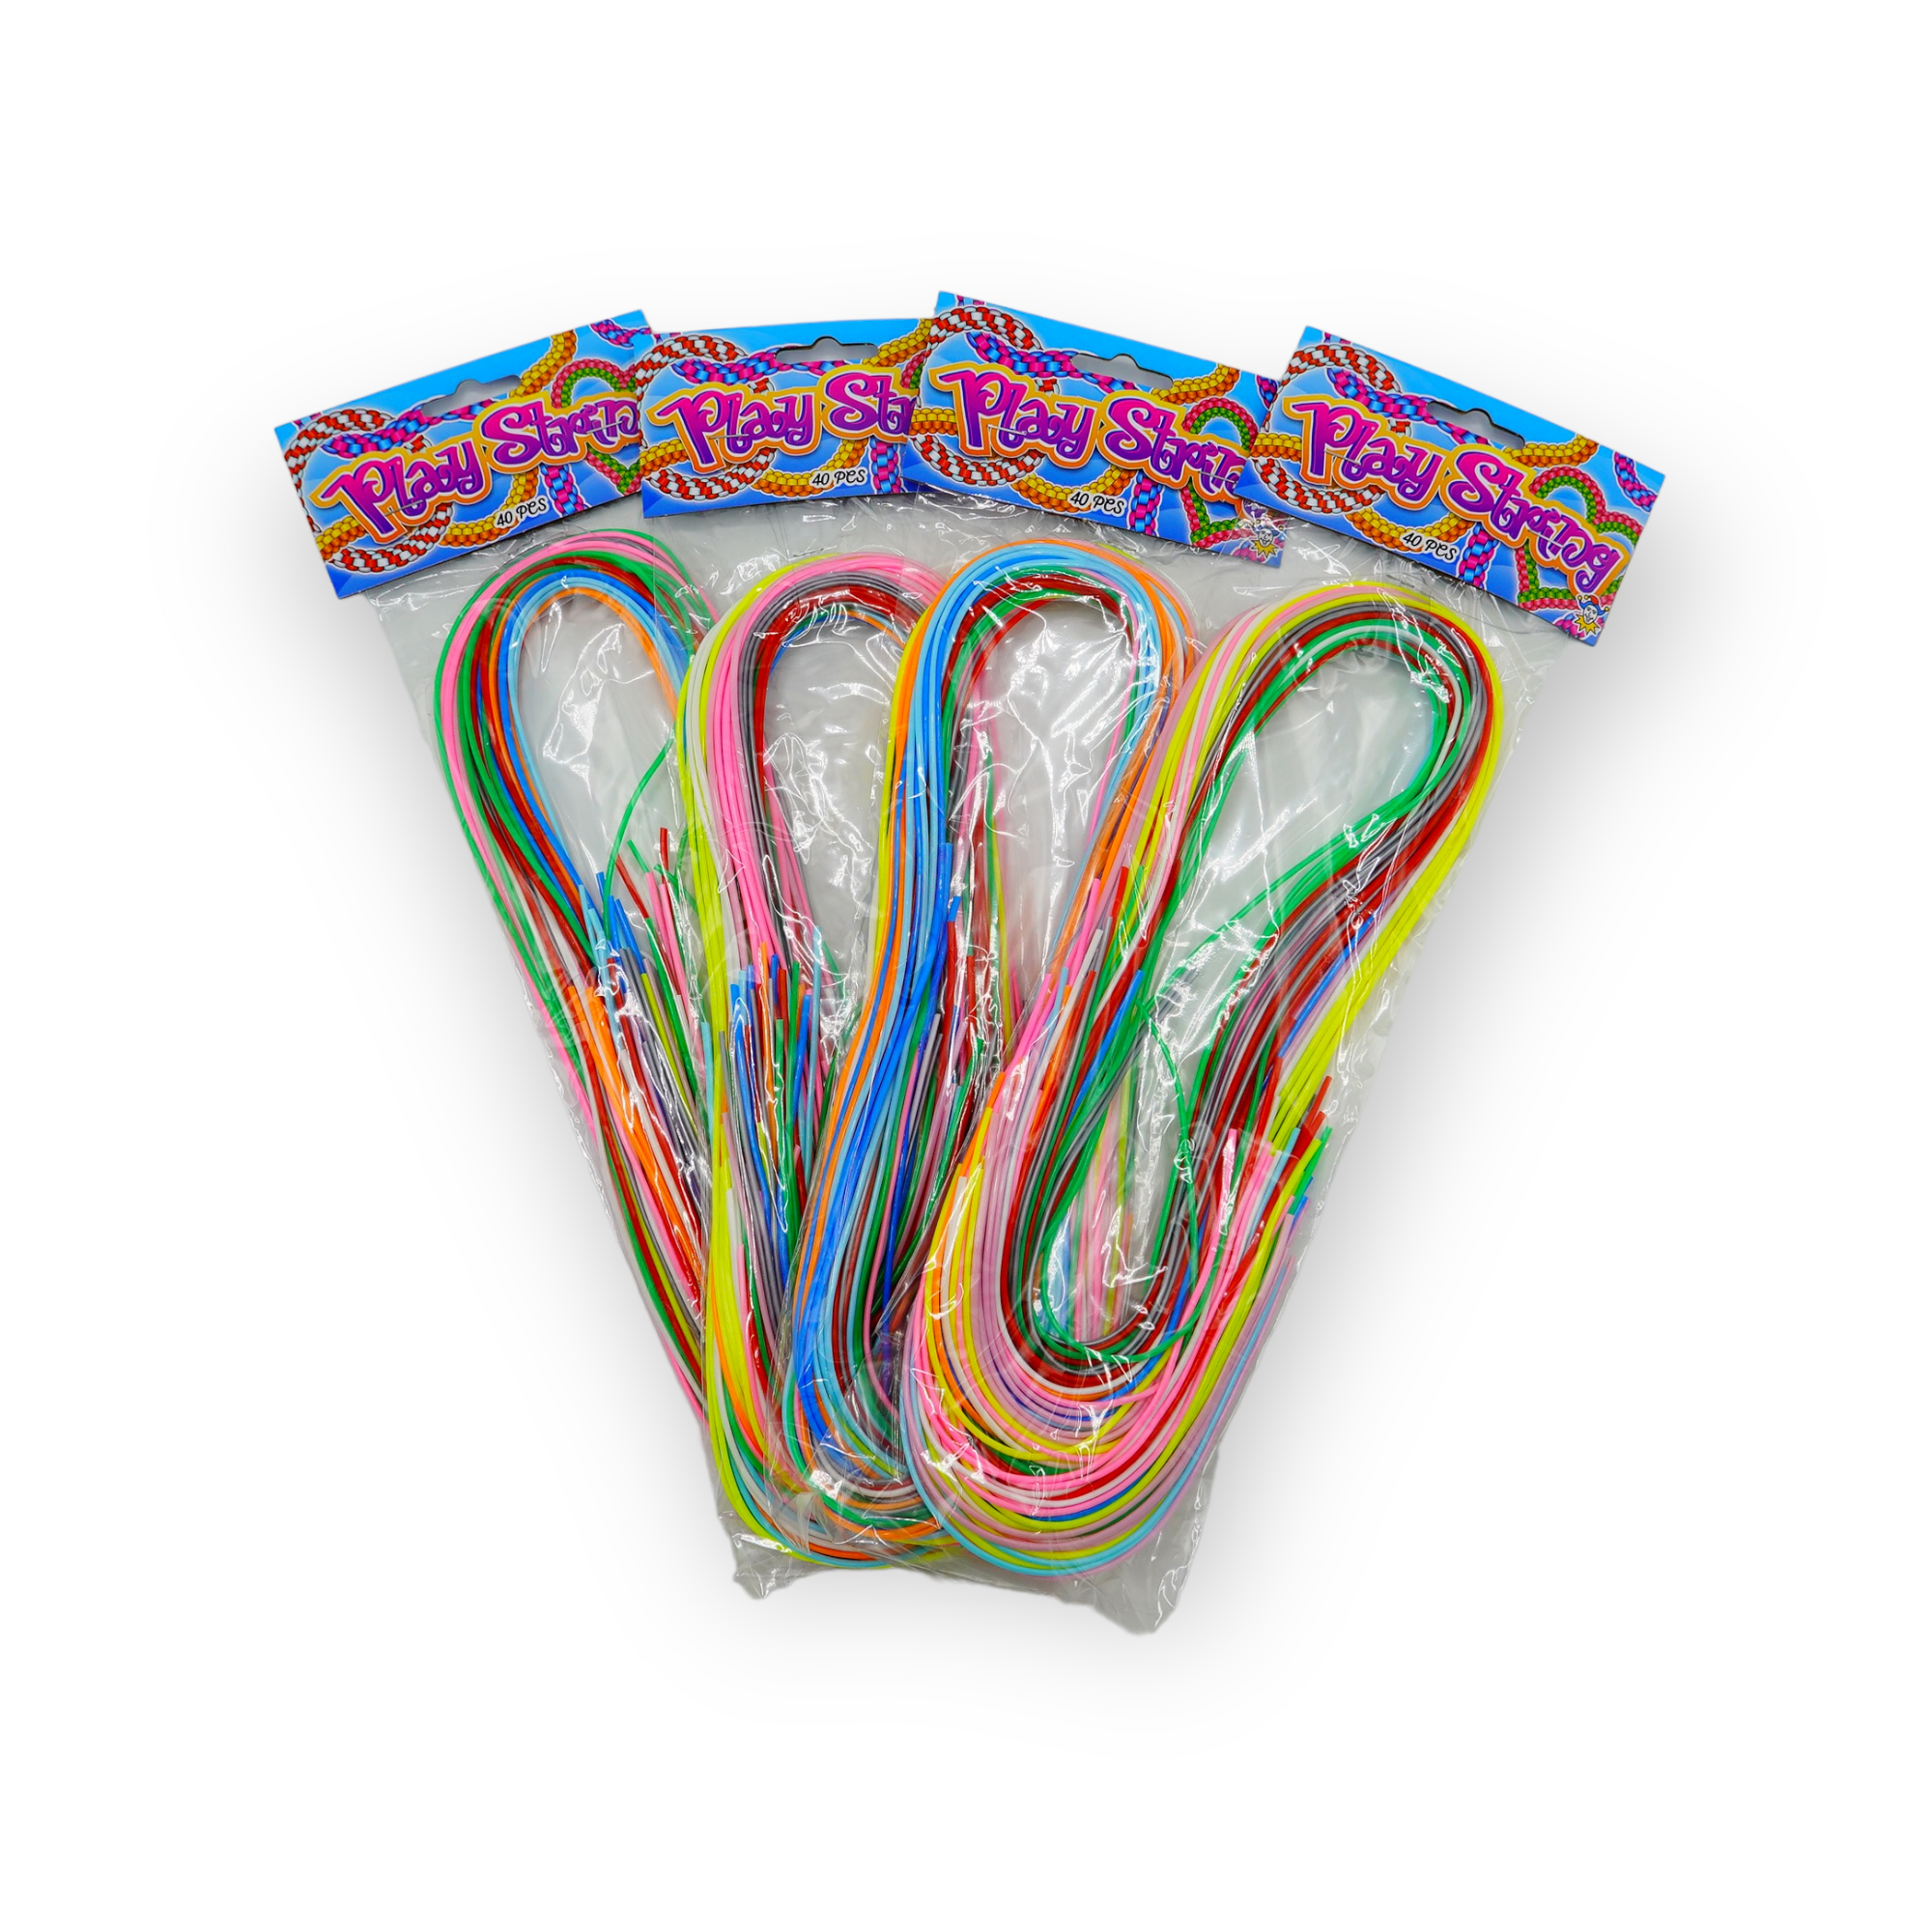 Scoubidou plastique tourbillons 10 sachets de 40 pièces couleurs brillantes